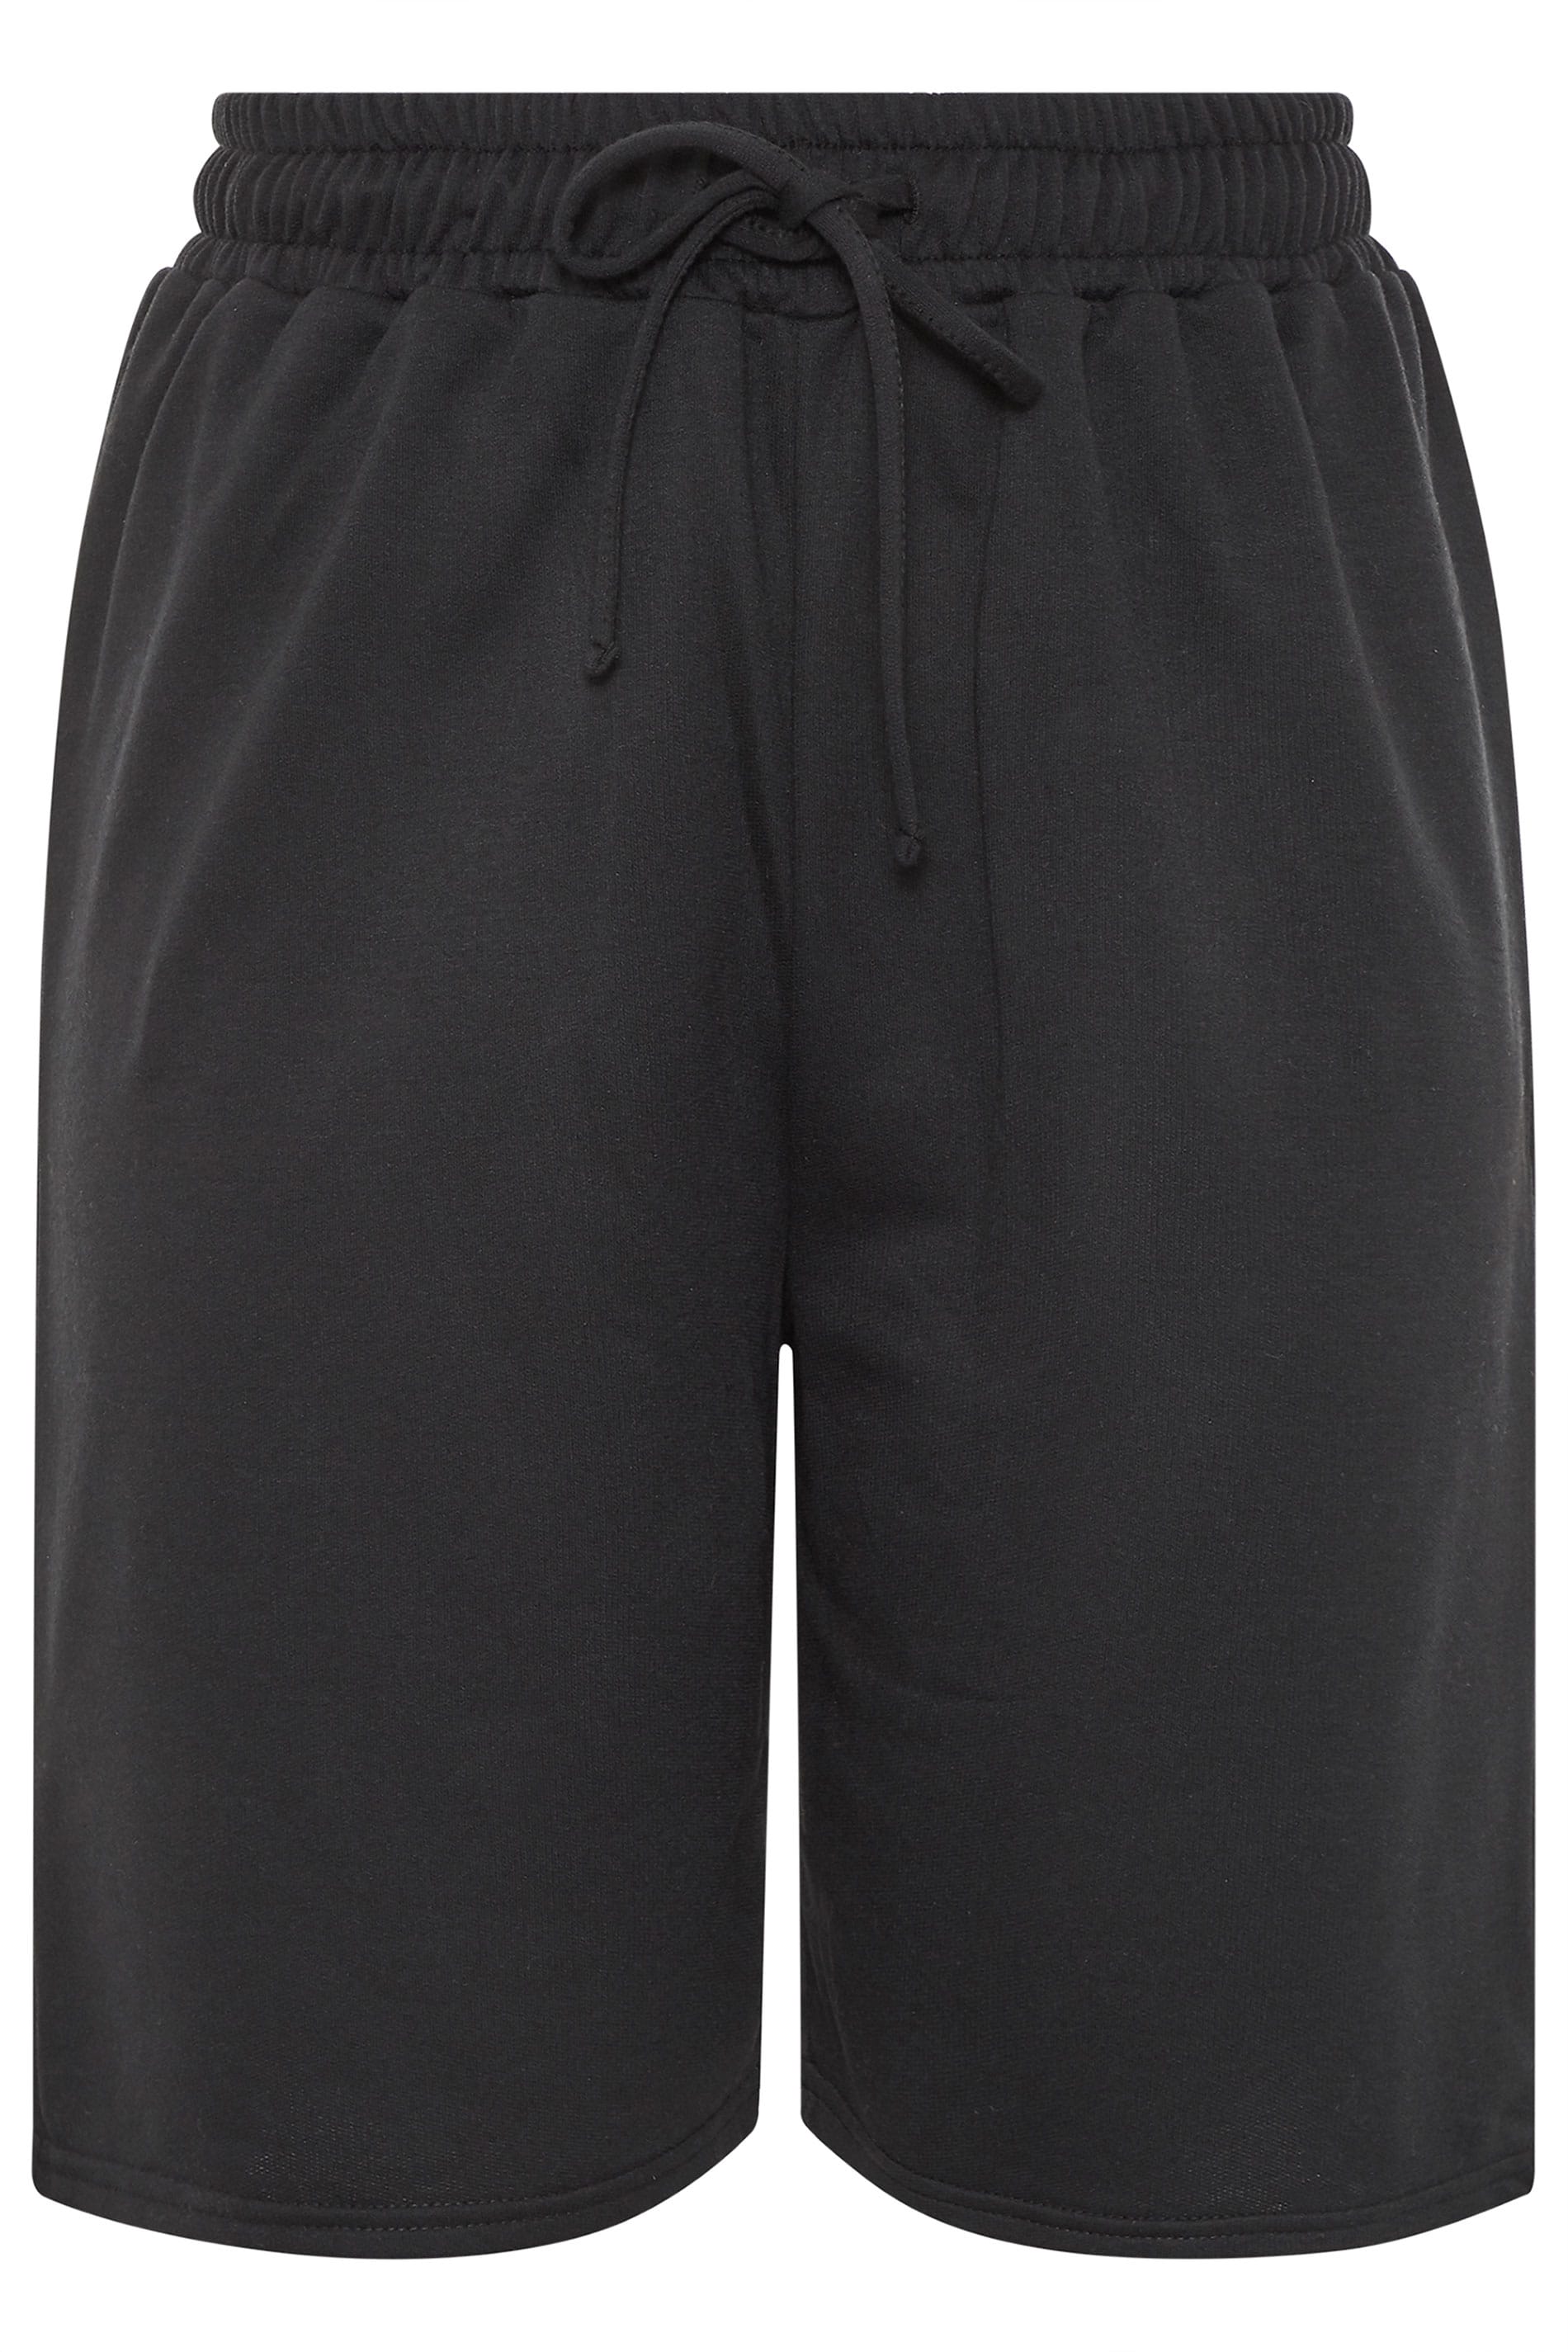 Black Jogger Shorts | Yours Clothing